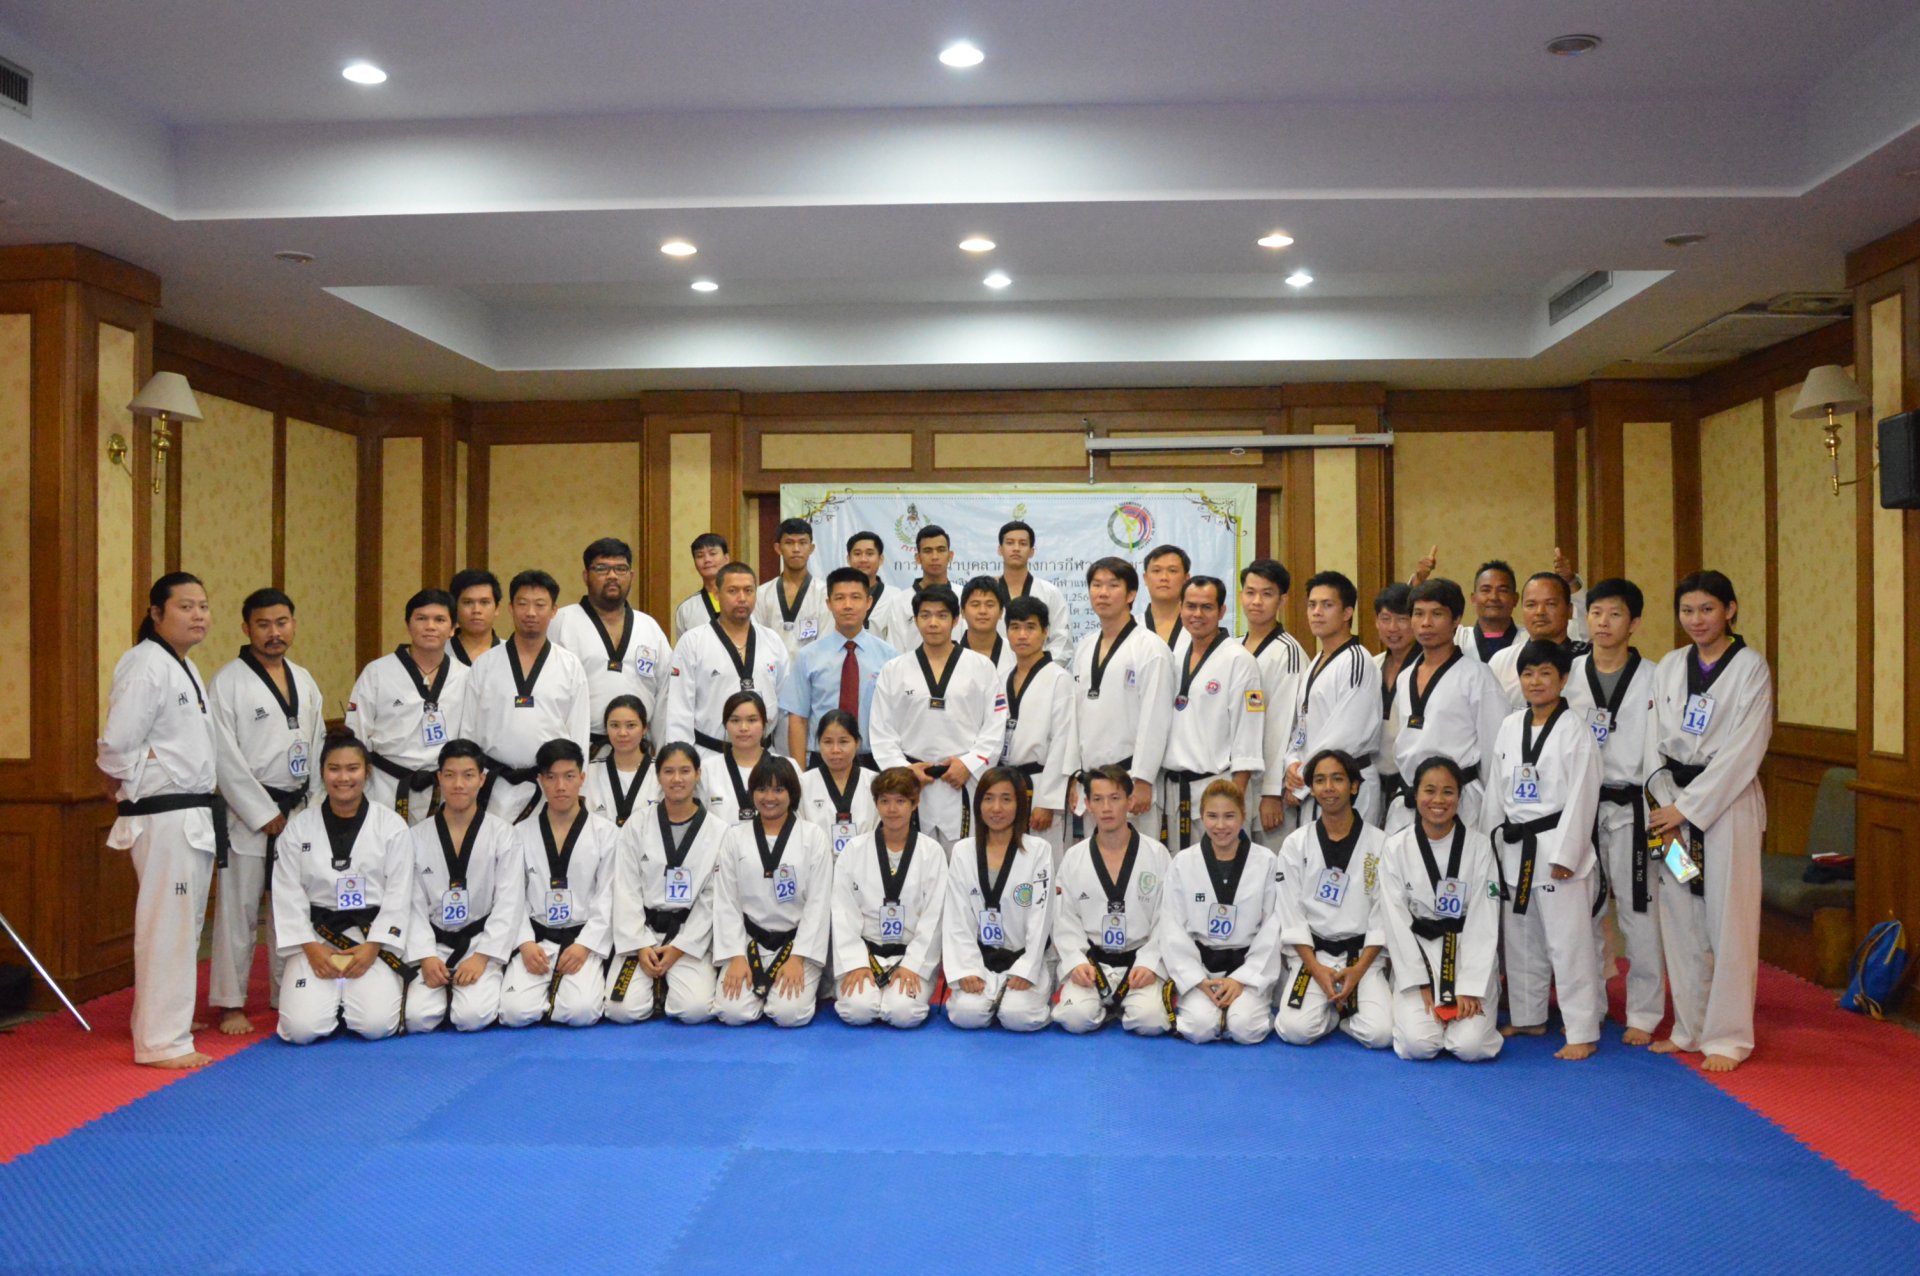 อบรมผู้ฝึกสอนระดับชาติ โดยสมาคมกีฬาเทควันโดแห่งประเทศไทย